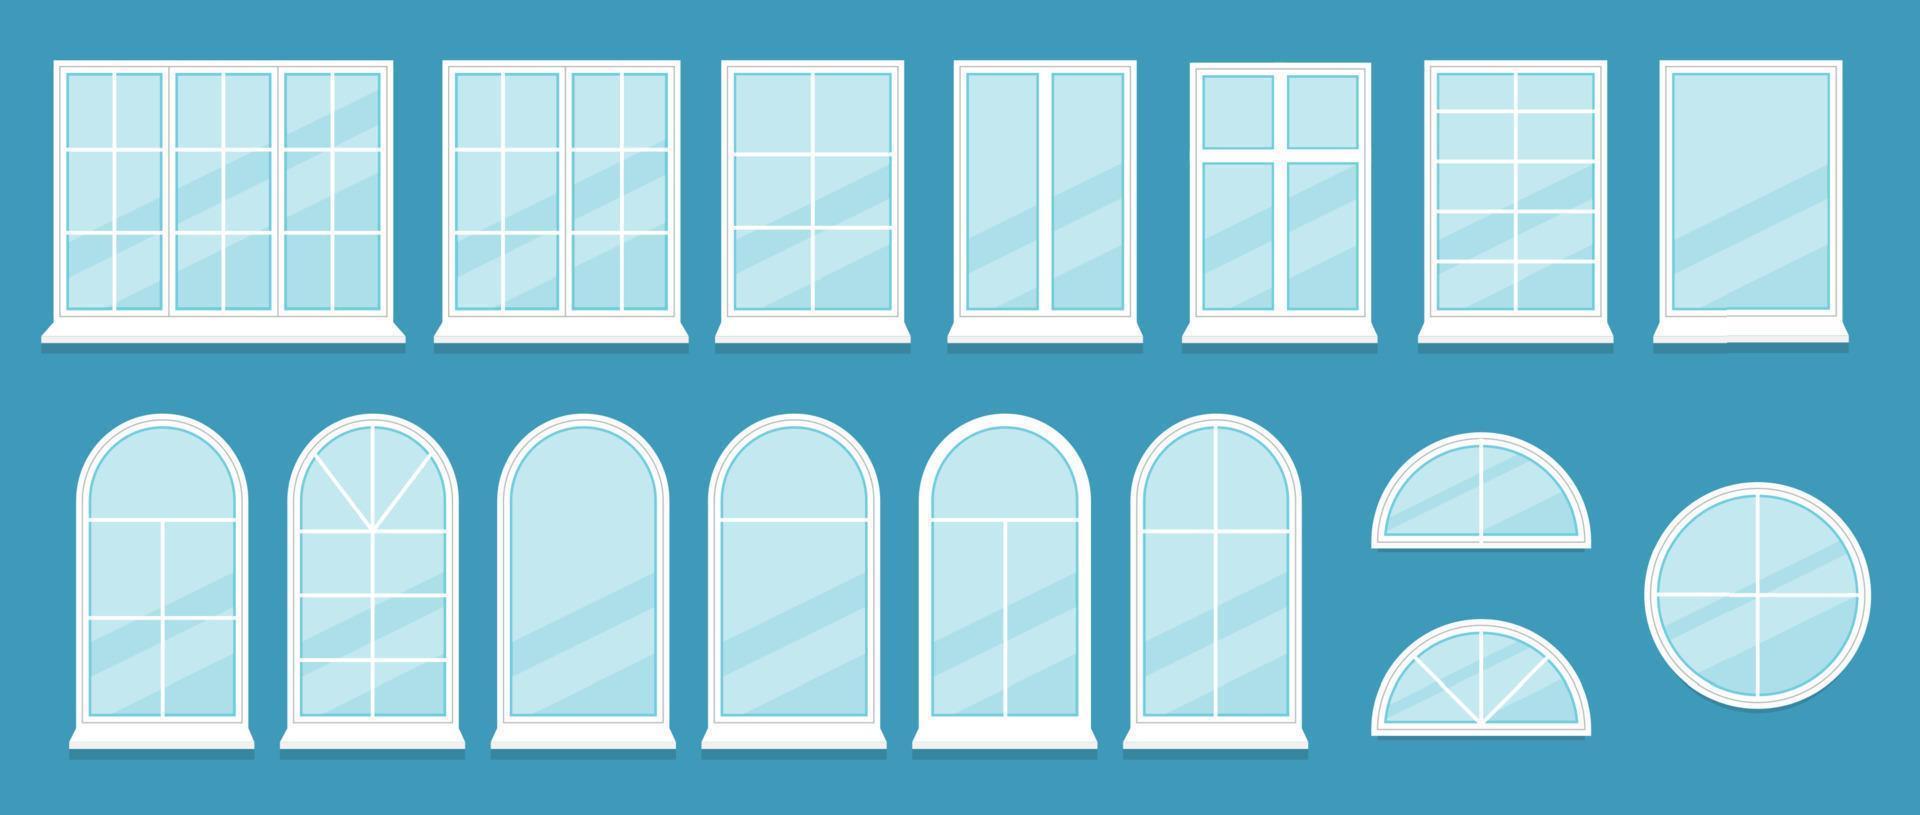 uppsättning av realistisk glas transparent plast fönster med fönster trösklar, skärp. vit Hem, kontor fönster, med ett, två, tre, fem avsnitt, vält blind, hantera för justering. vektor illustration.